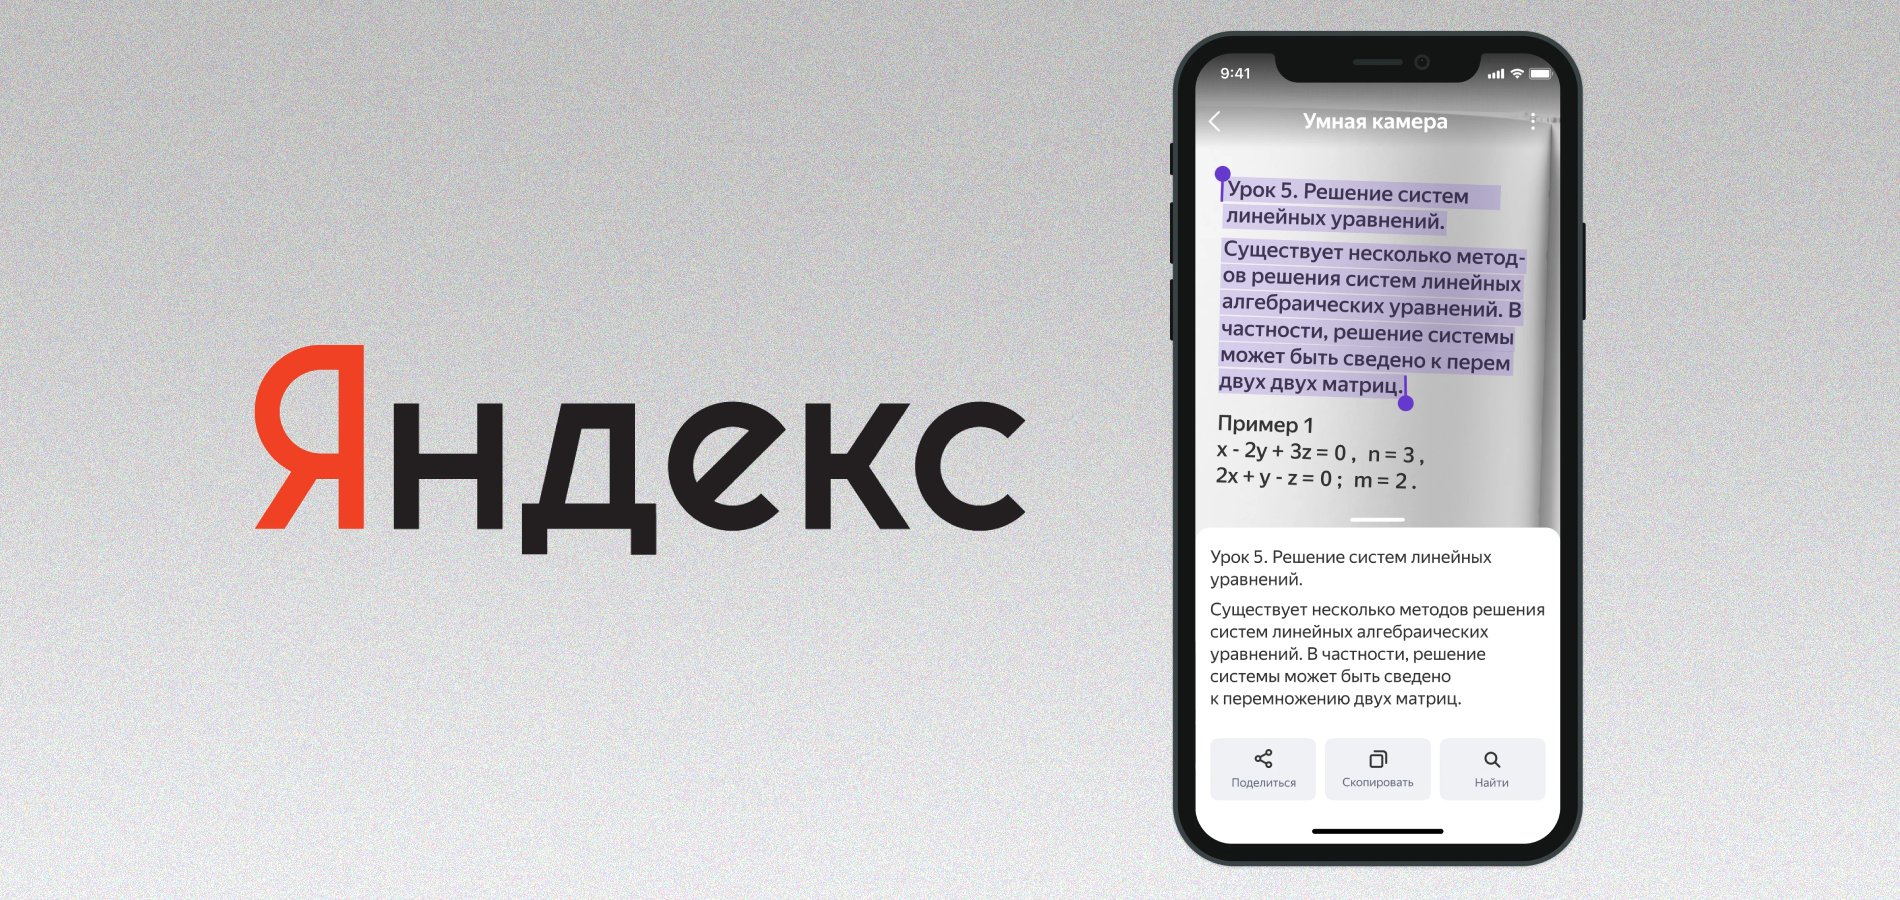 Яндекс добавил в умную камеру функцию распознавания текста